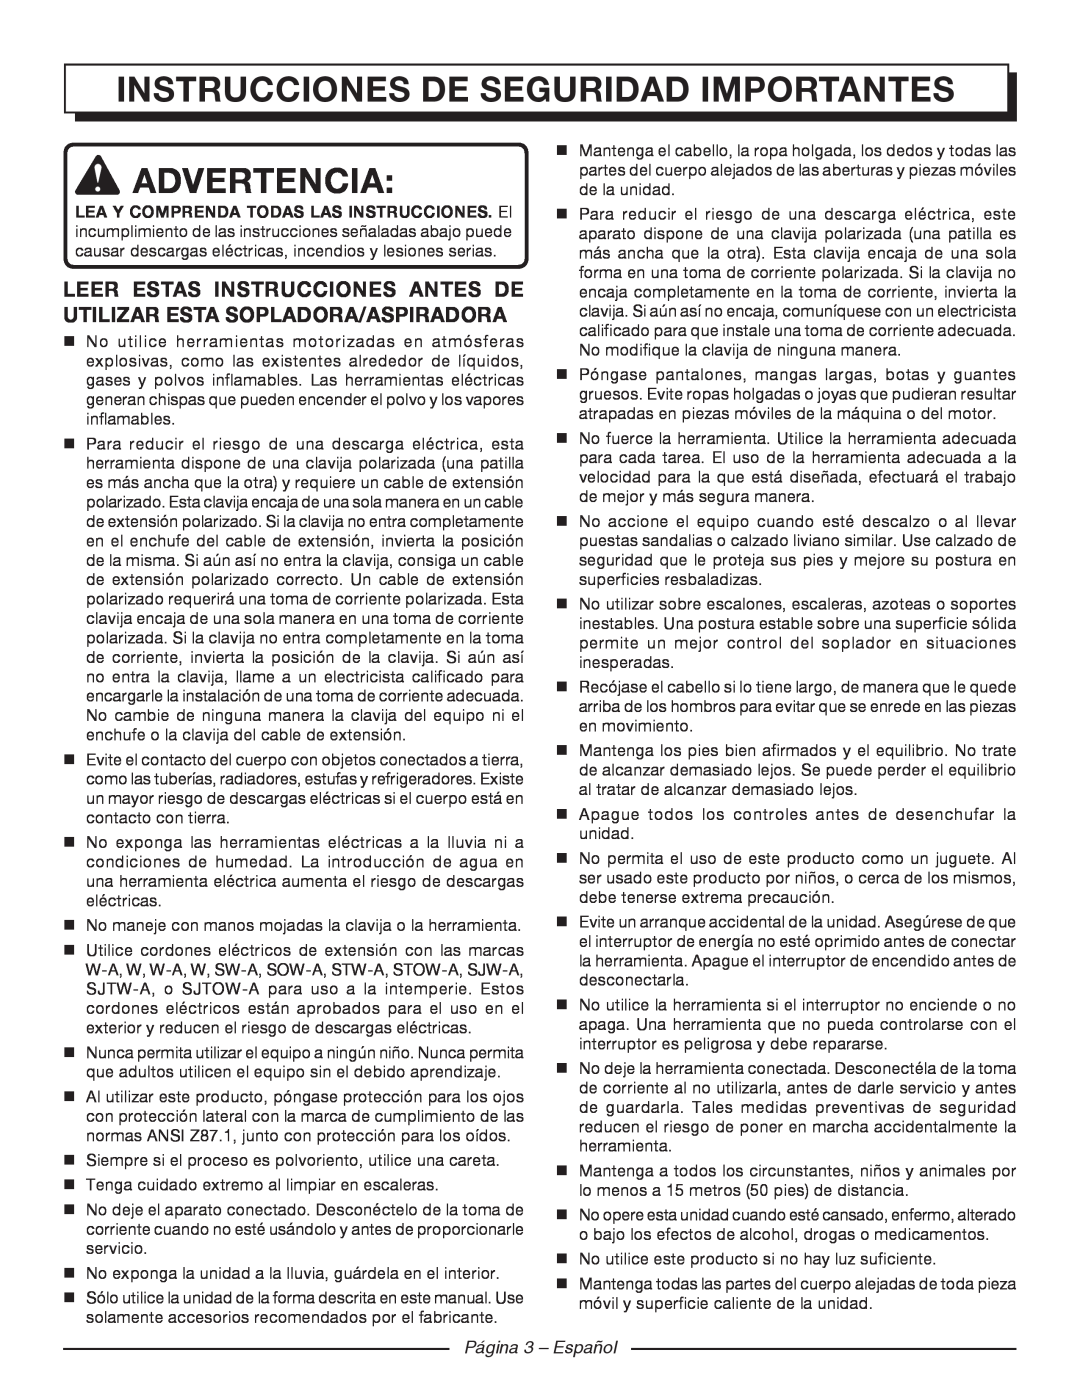 Homelite UT42120 manuel dutilisation Instrucciones de seguridad importantes, Advertencia, Página 3 - Español 